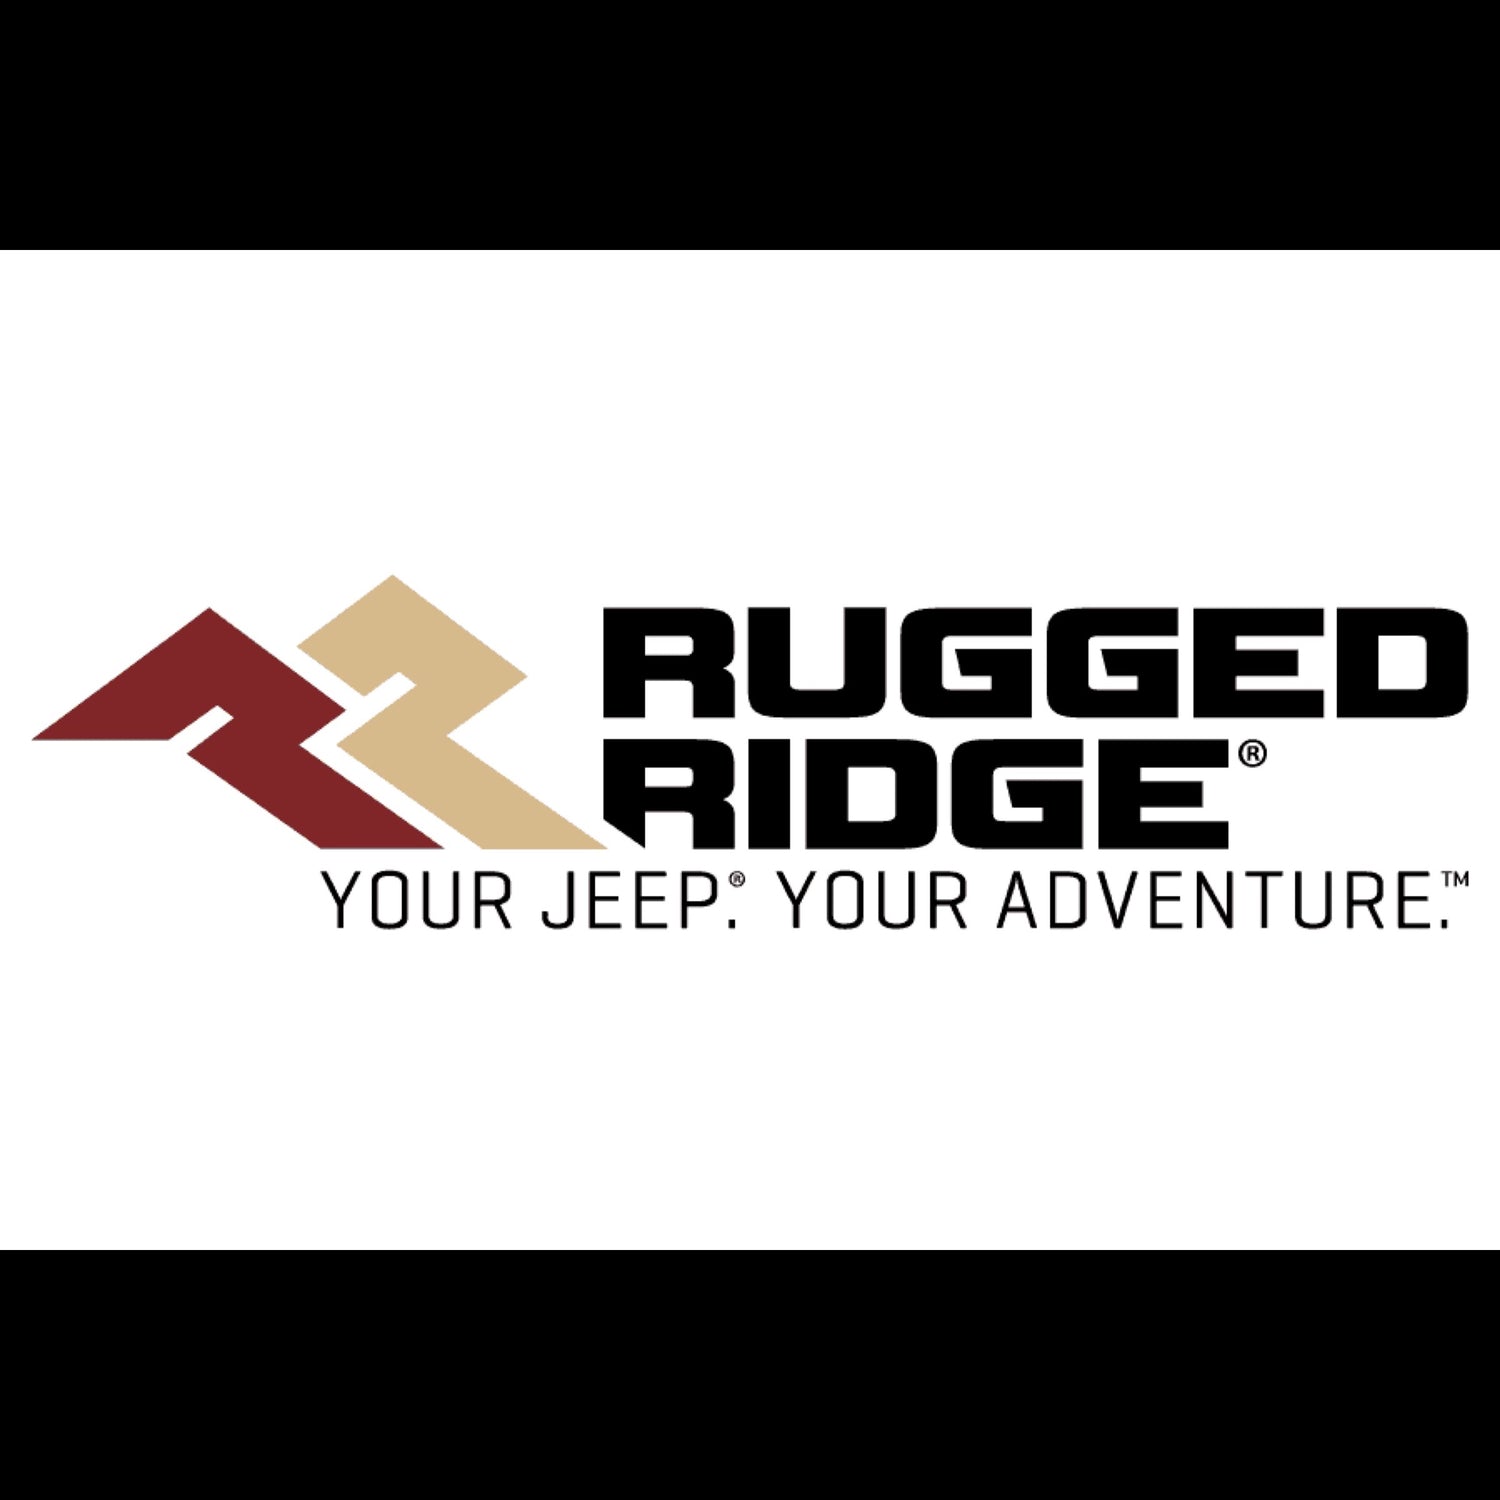 Rugged Ridge logo with white background